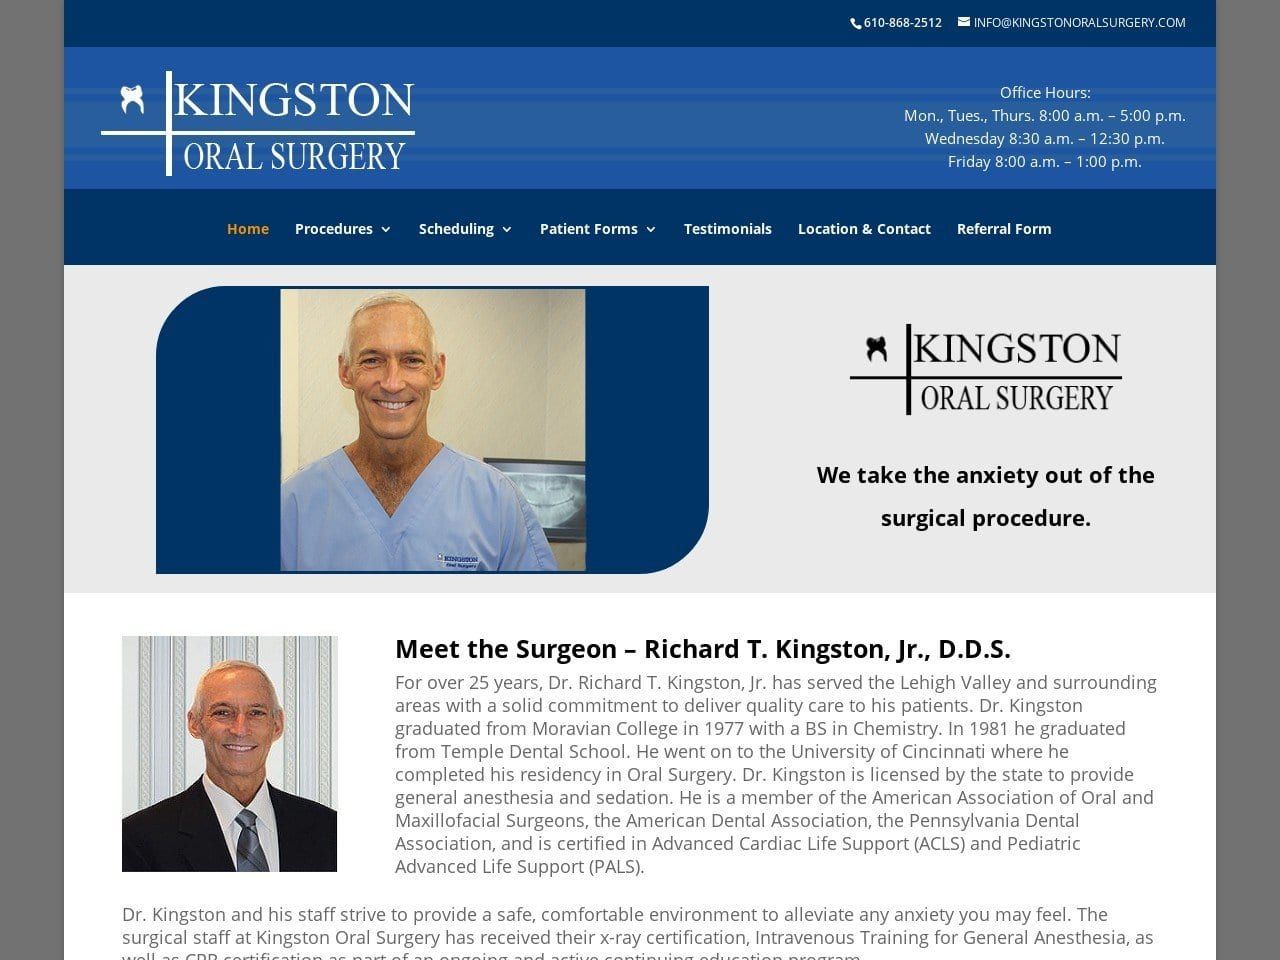 Richard Kingston Jr. D.D.S. Website Screenshot from kingstonoralsurgery.com